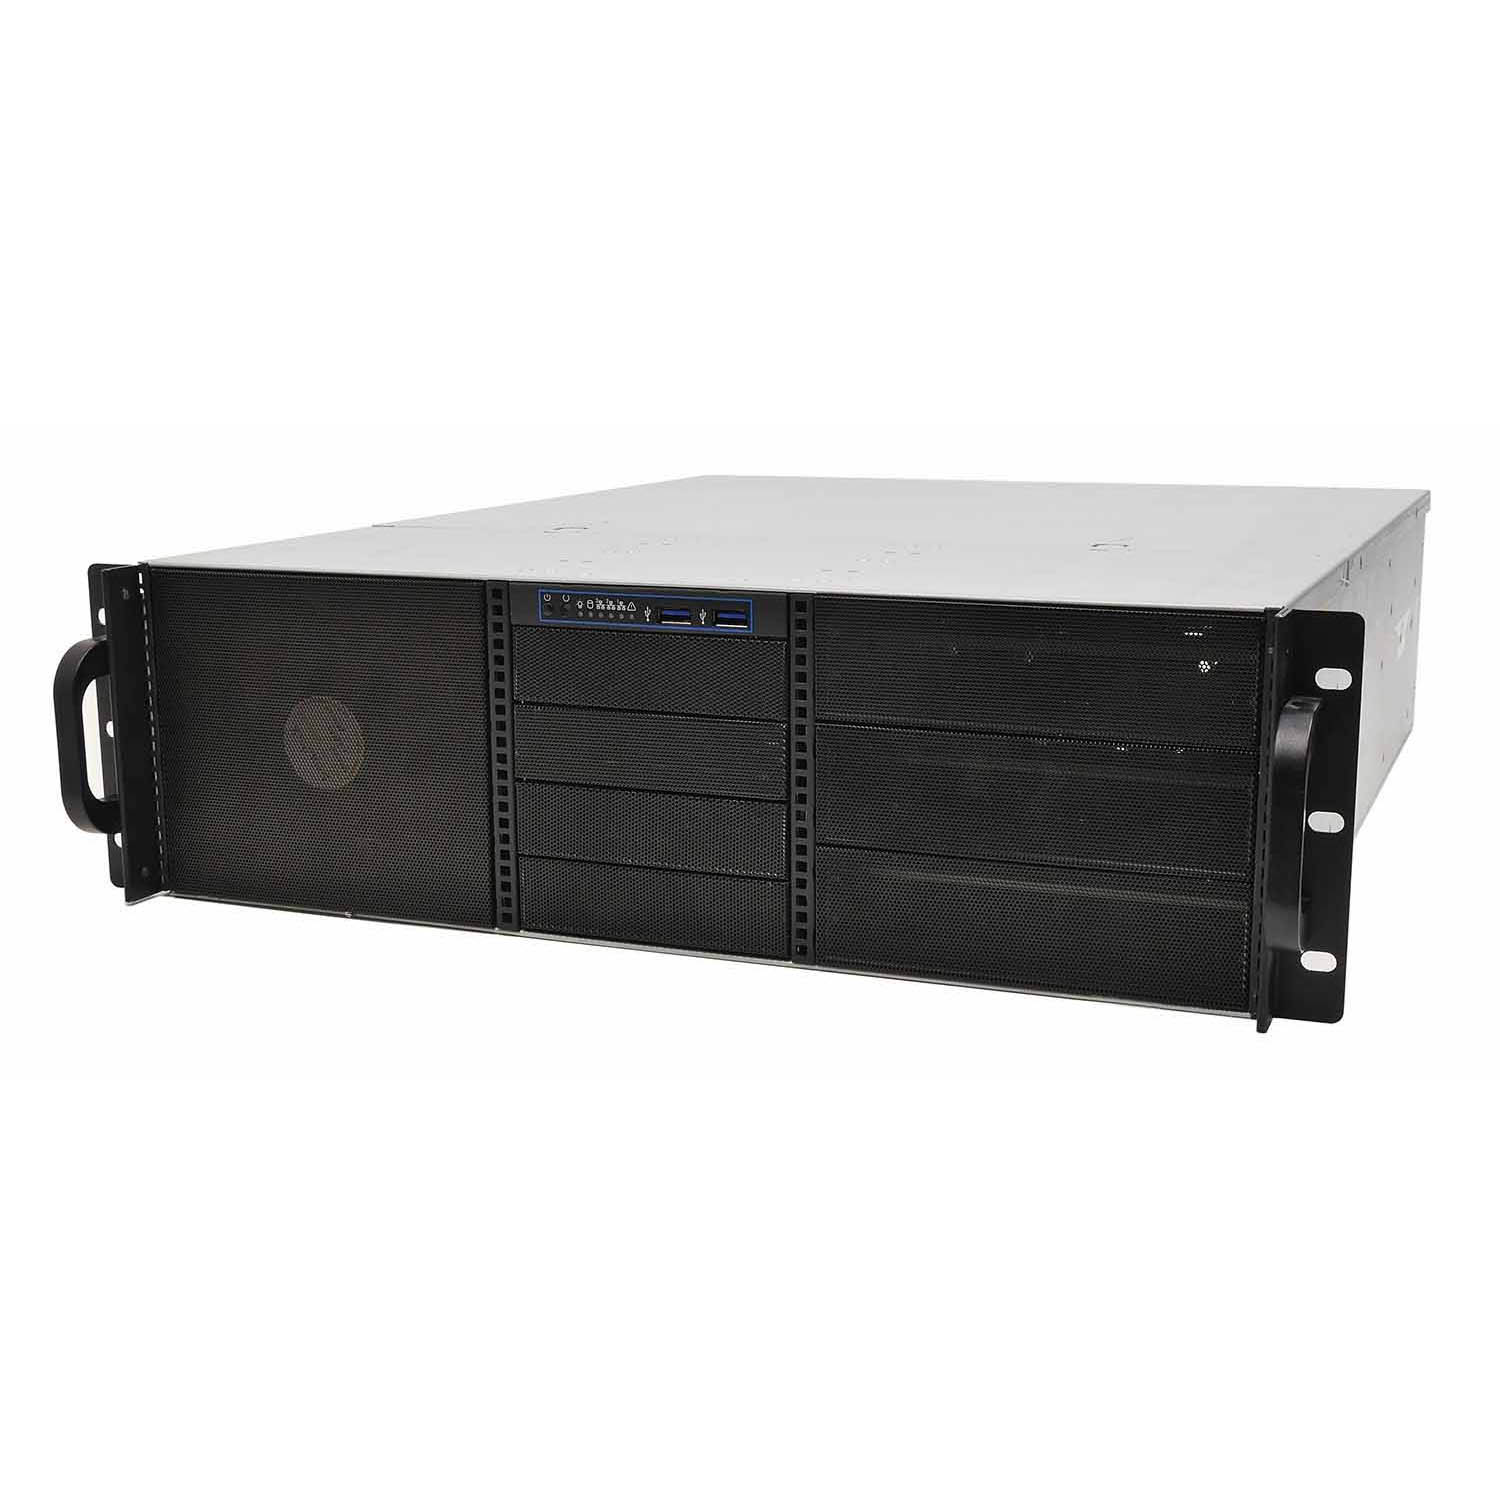 Серверный корпус 3U NR-N3514 2х600Вт (EATX12x13,6x5.25ext(10x3.5int),4x3.5ext,550мм)черный,NegoRack